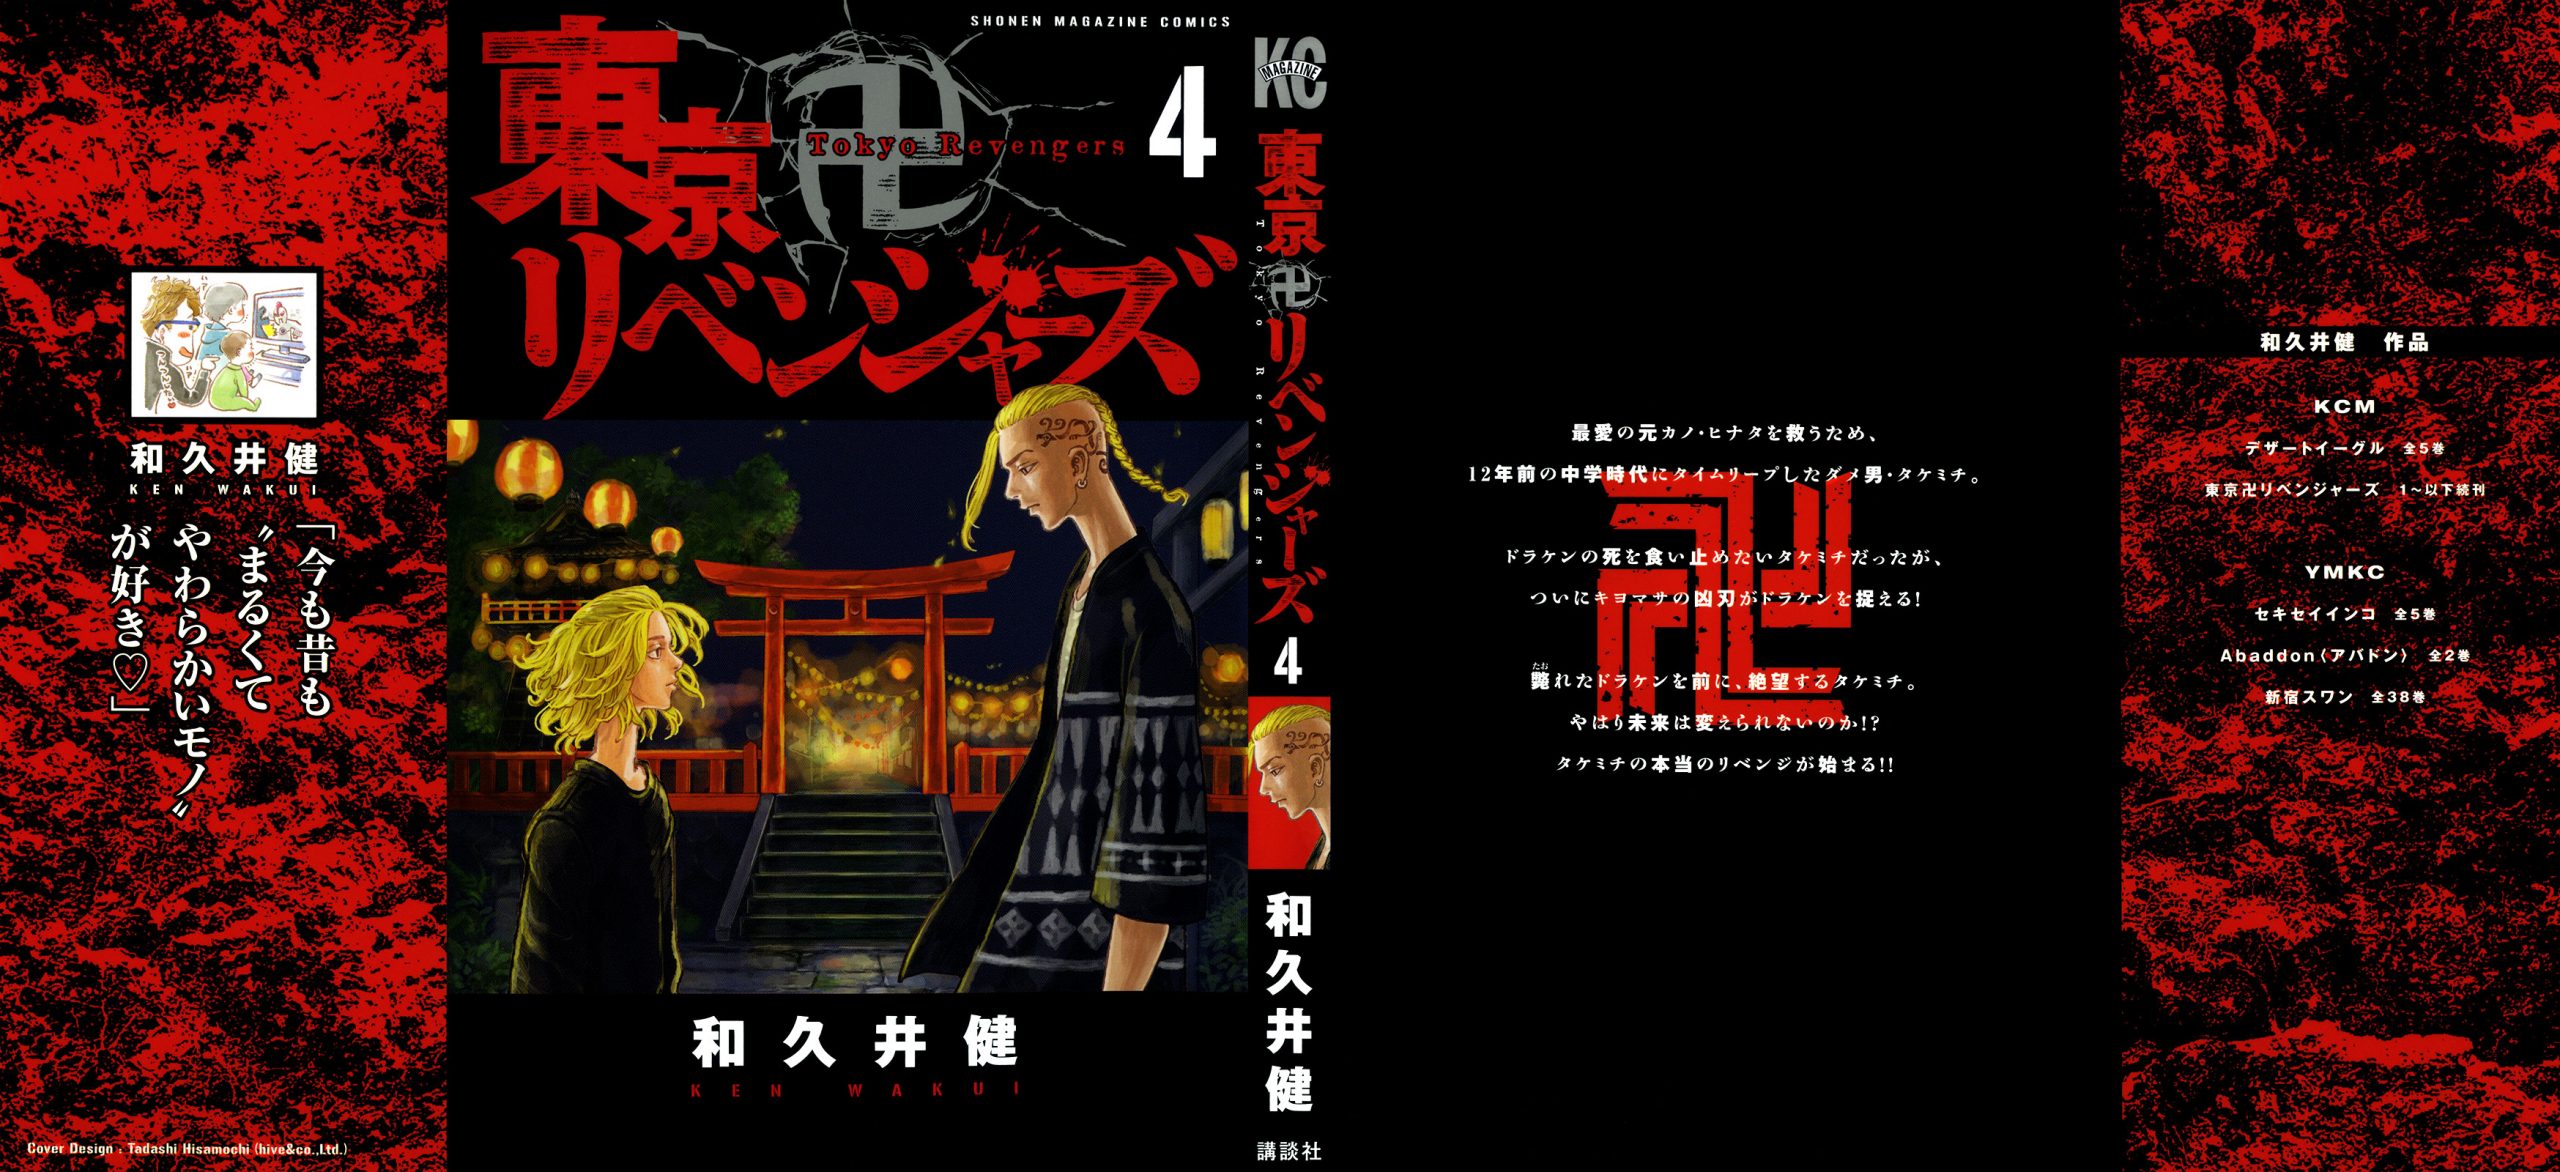 Tokyo Revengers Wallpaper Poster